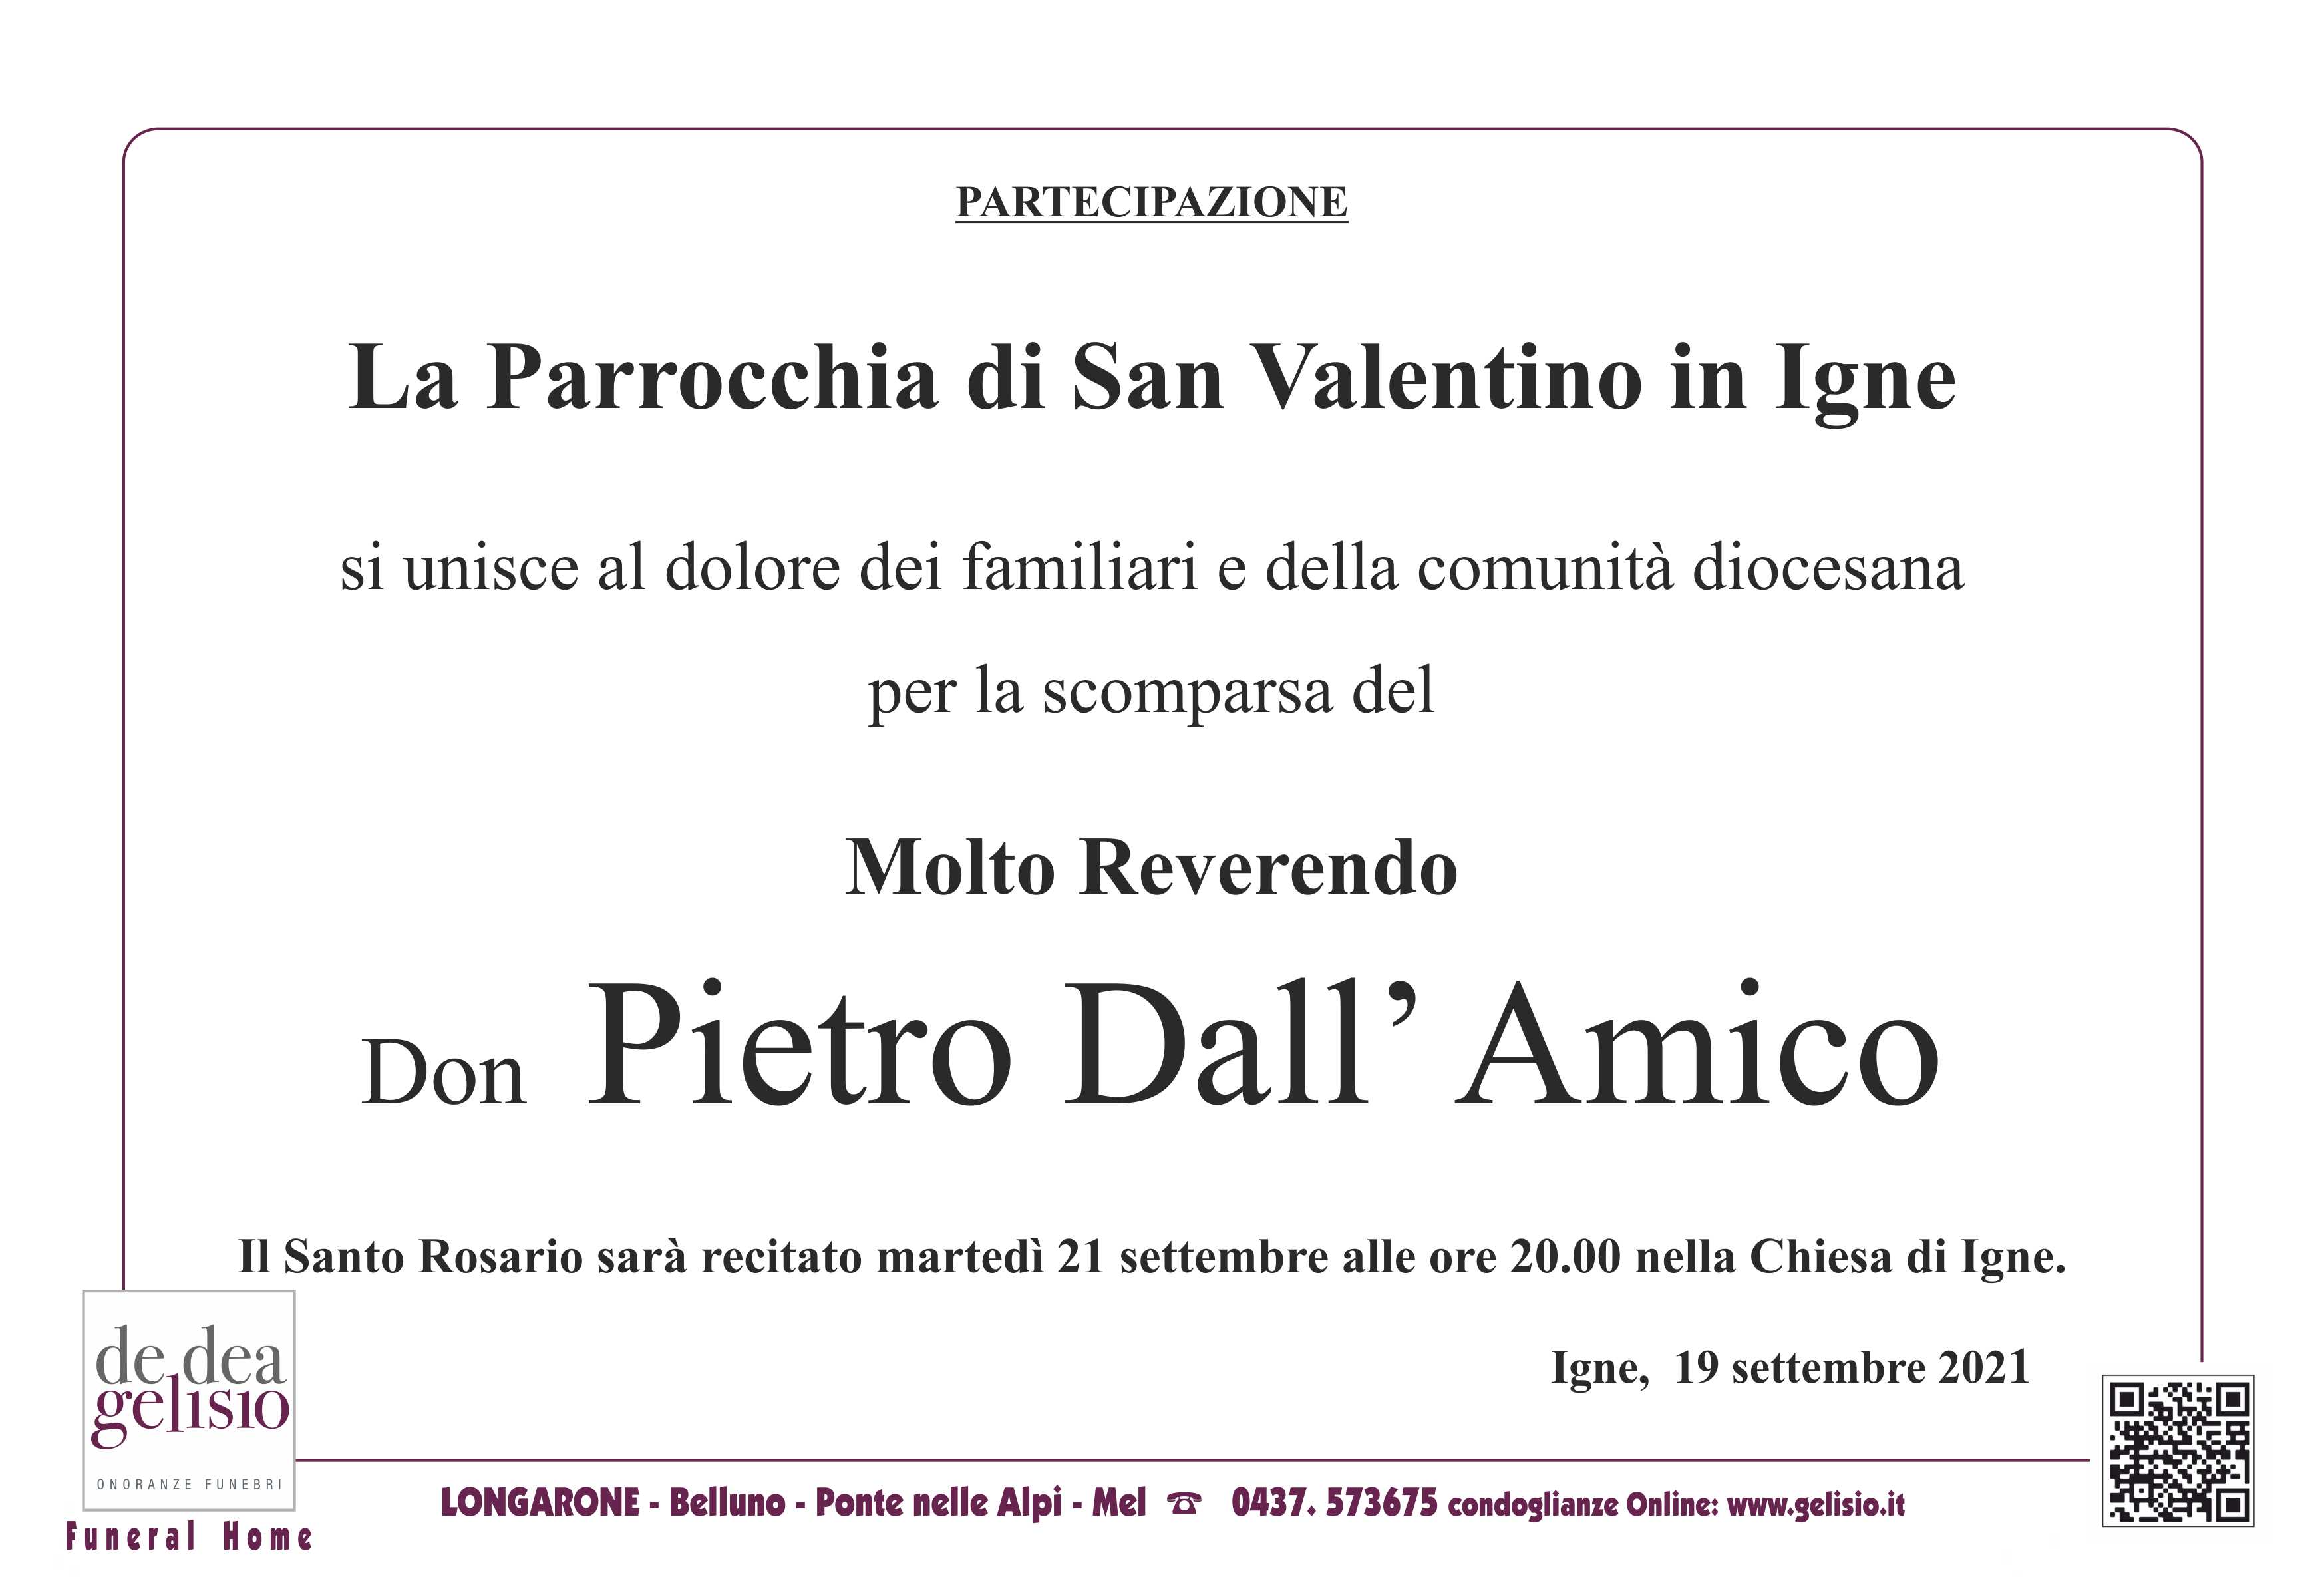 Don Pietro Dall Amico partecipazione Igne